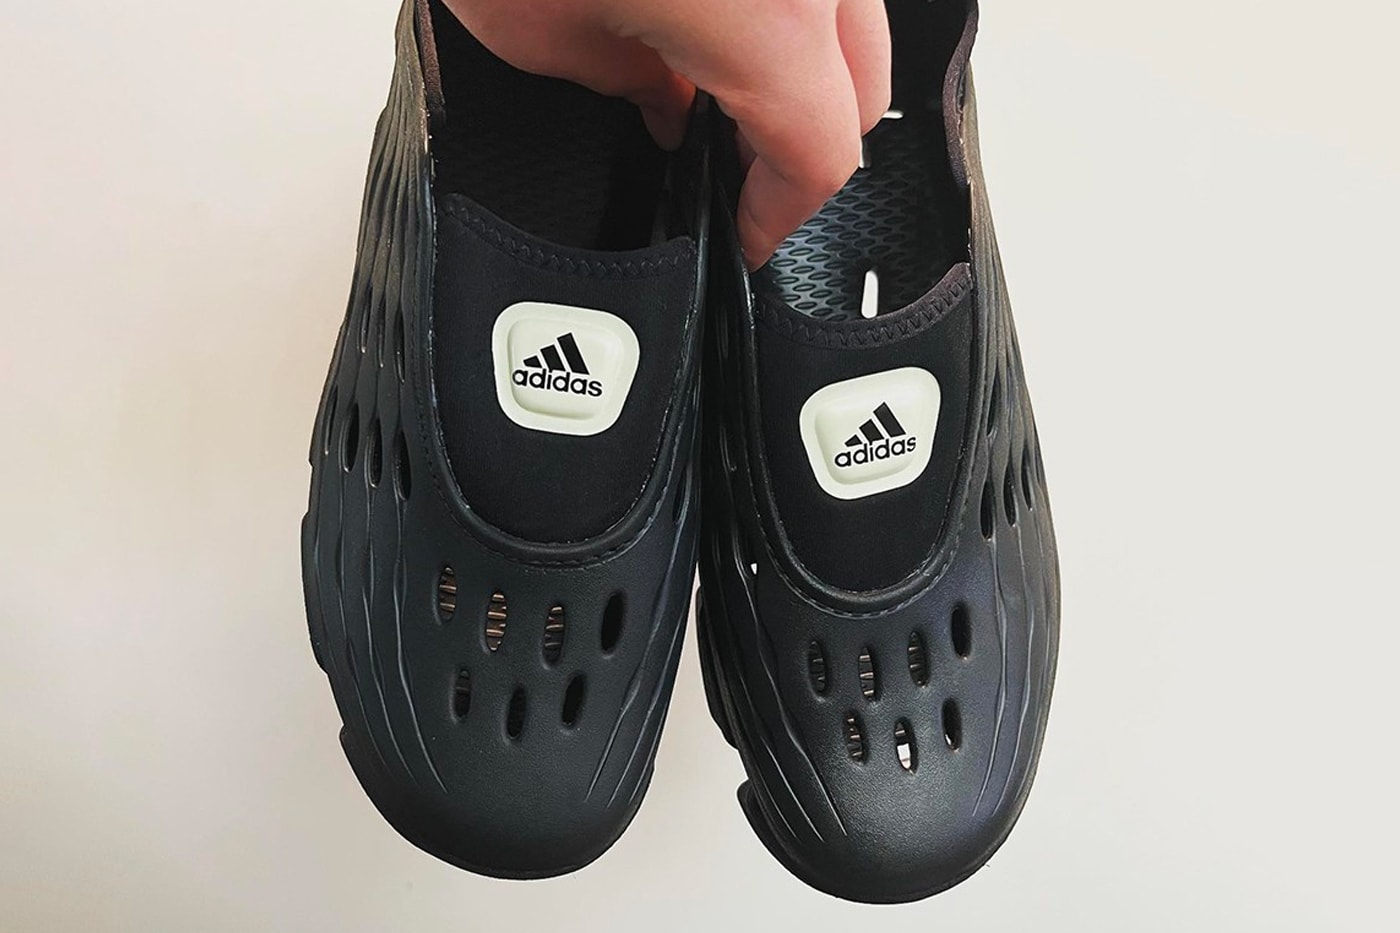 率先預覽 adidas 最新鏤空套穿式鞋款